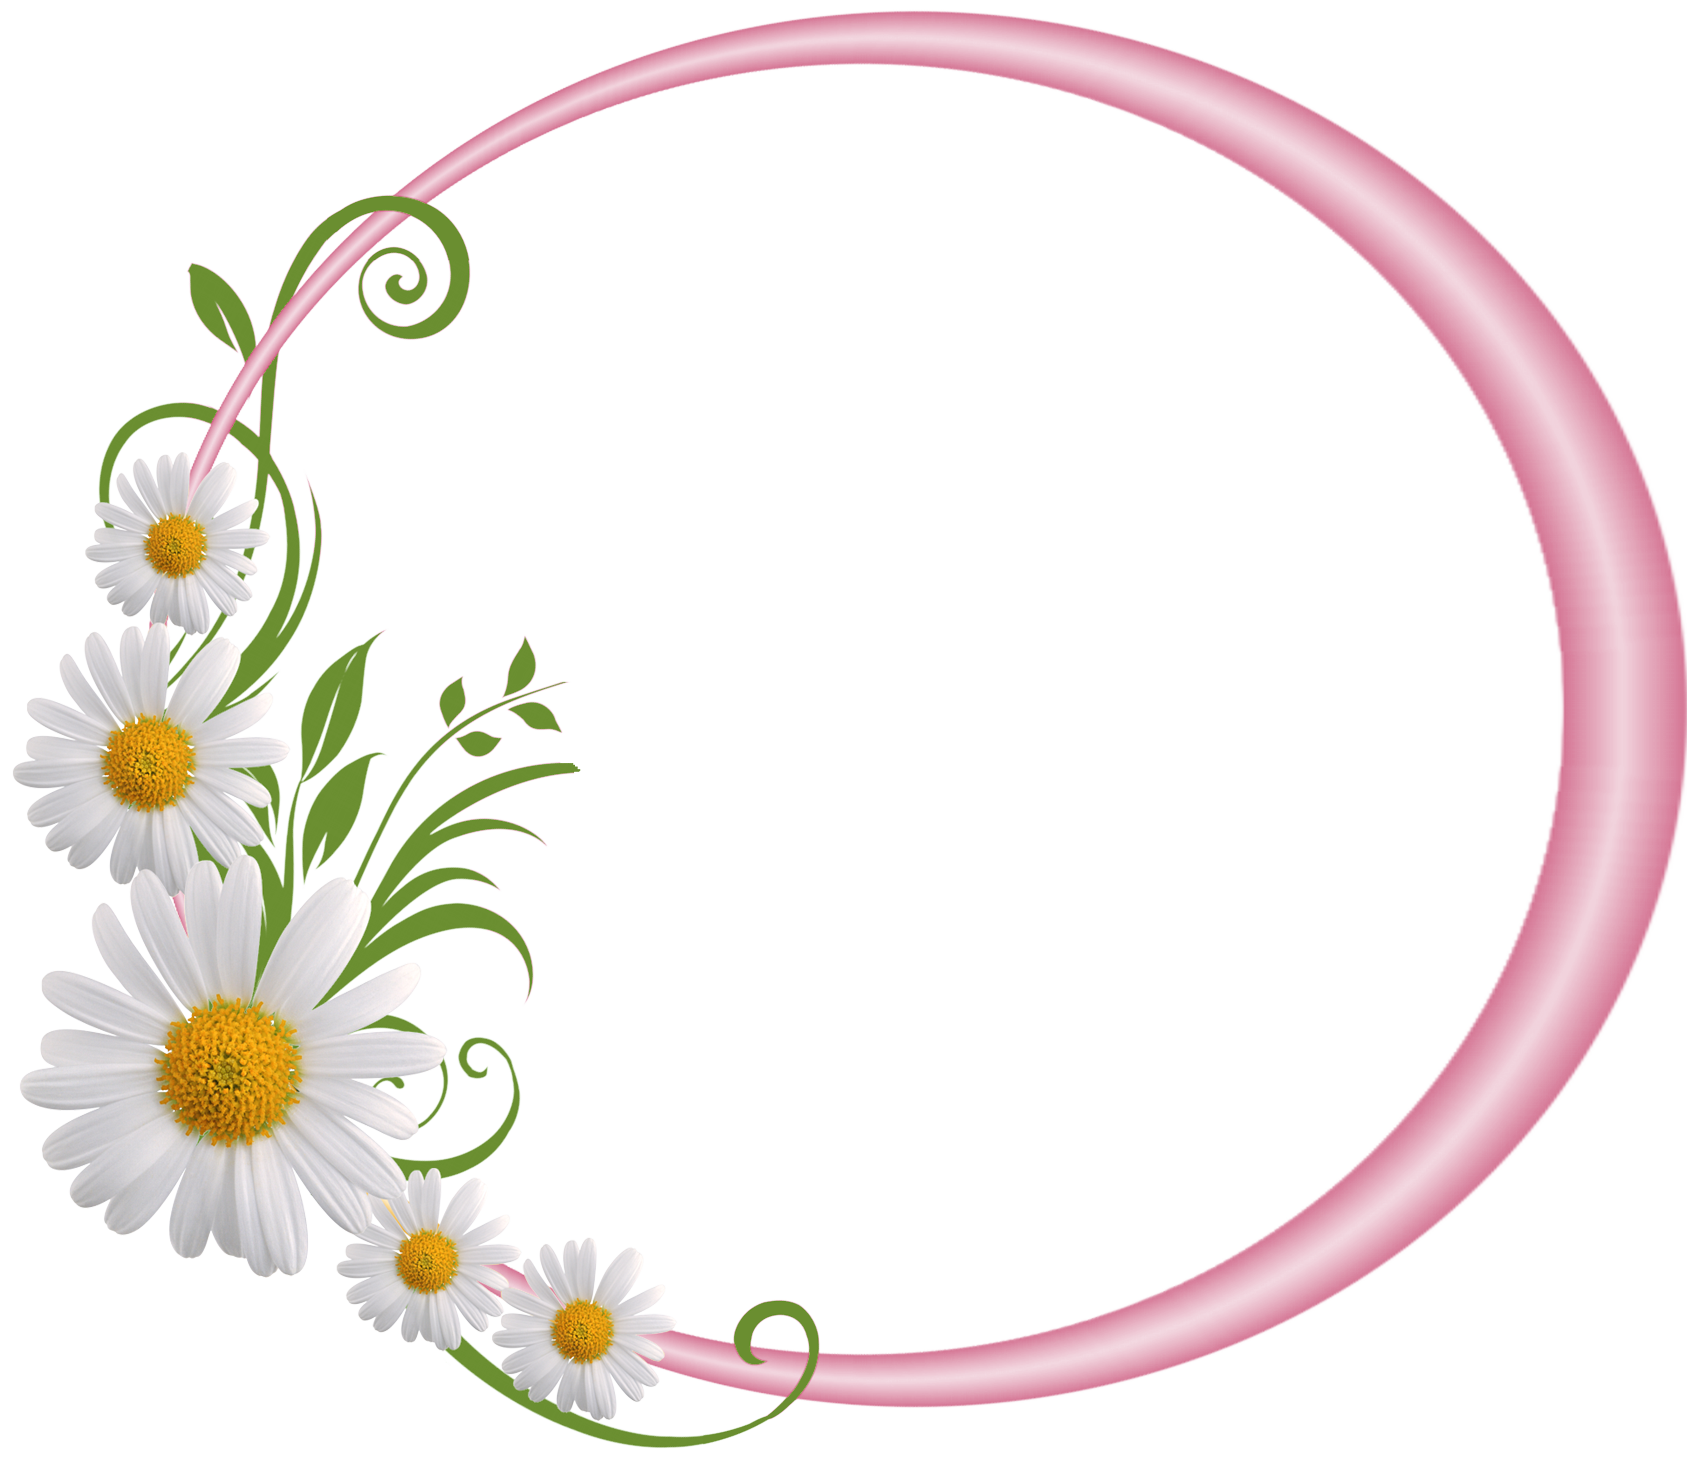 กรอบรูปวงกลมลายดอกไม้สีชมพูภาพถ่าย PNG